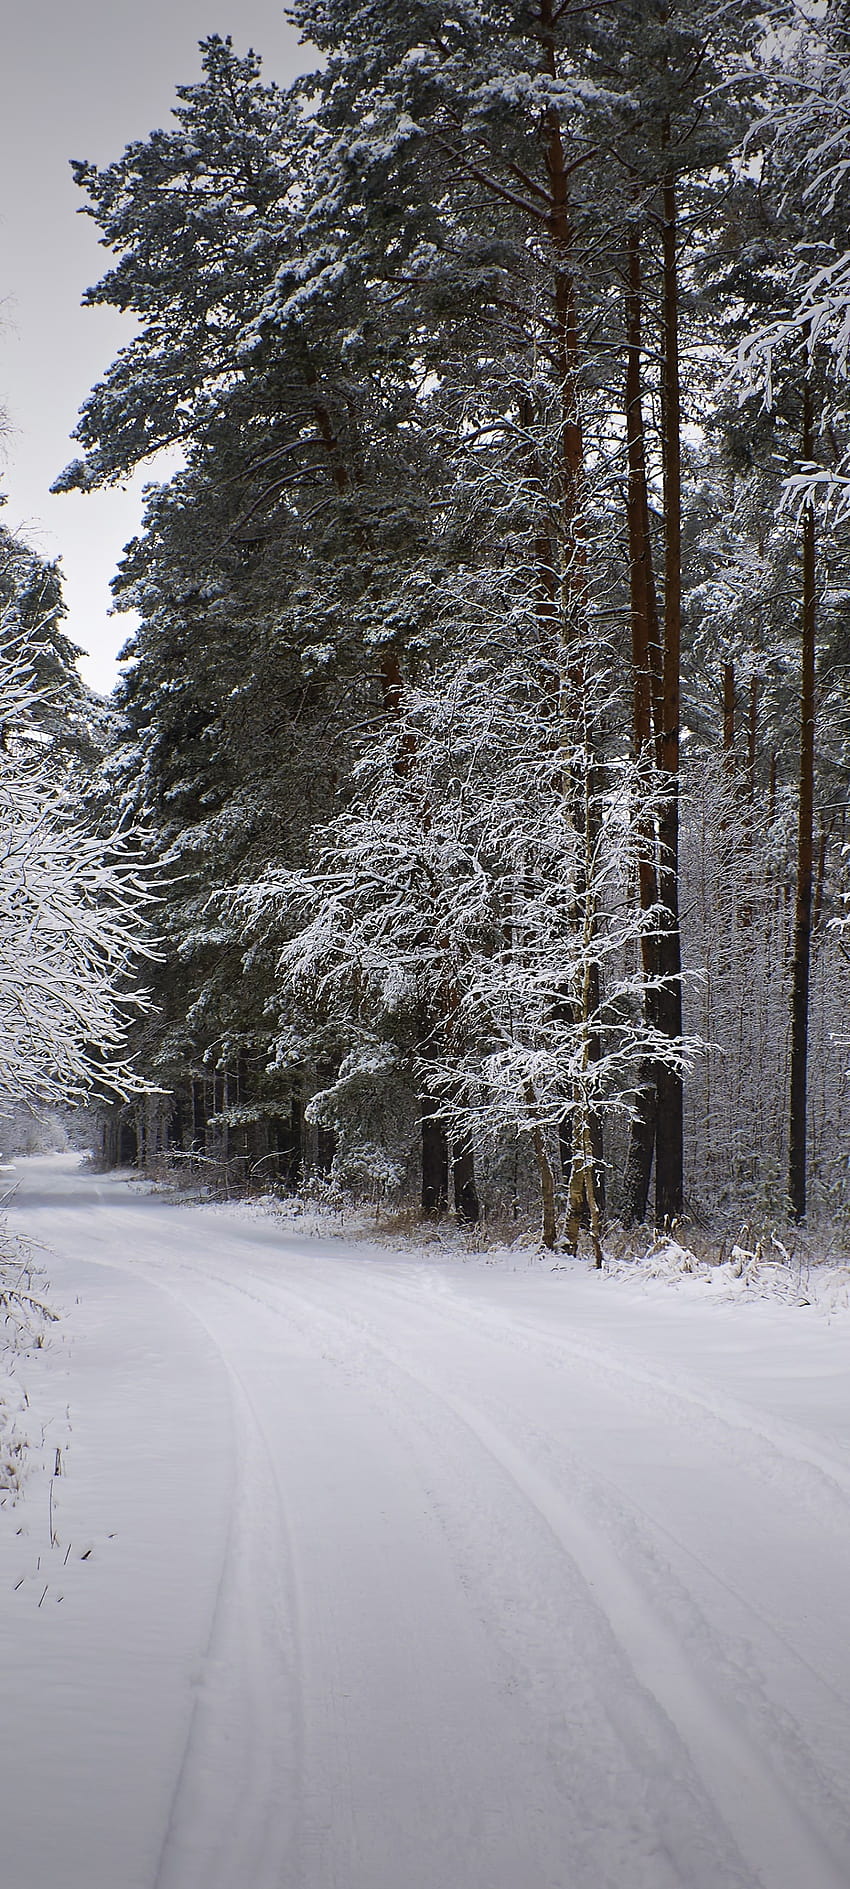 1440x3200 Nieve, camino, invierno, bosque, camino, paisaje para Samsung Galaxy S20 Ultra, Samsung Galaxy S2 Plus, Samsung Galaxy S20, paisaje de bosque invernal fondo de pantalla del teléfono